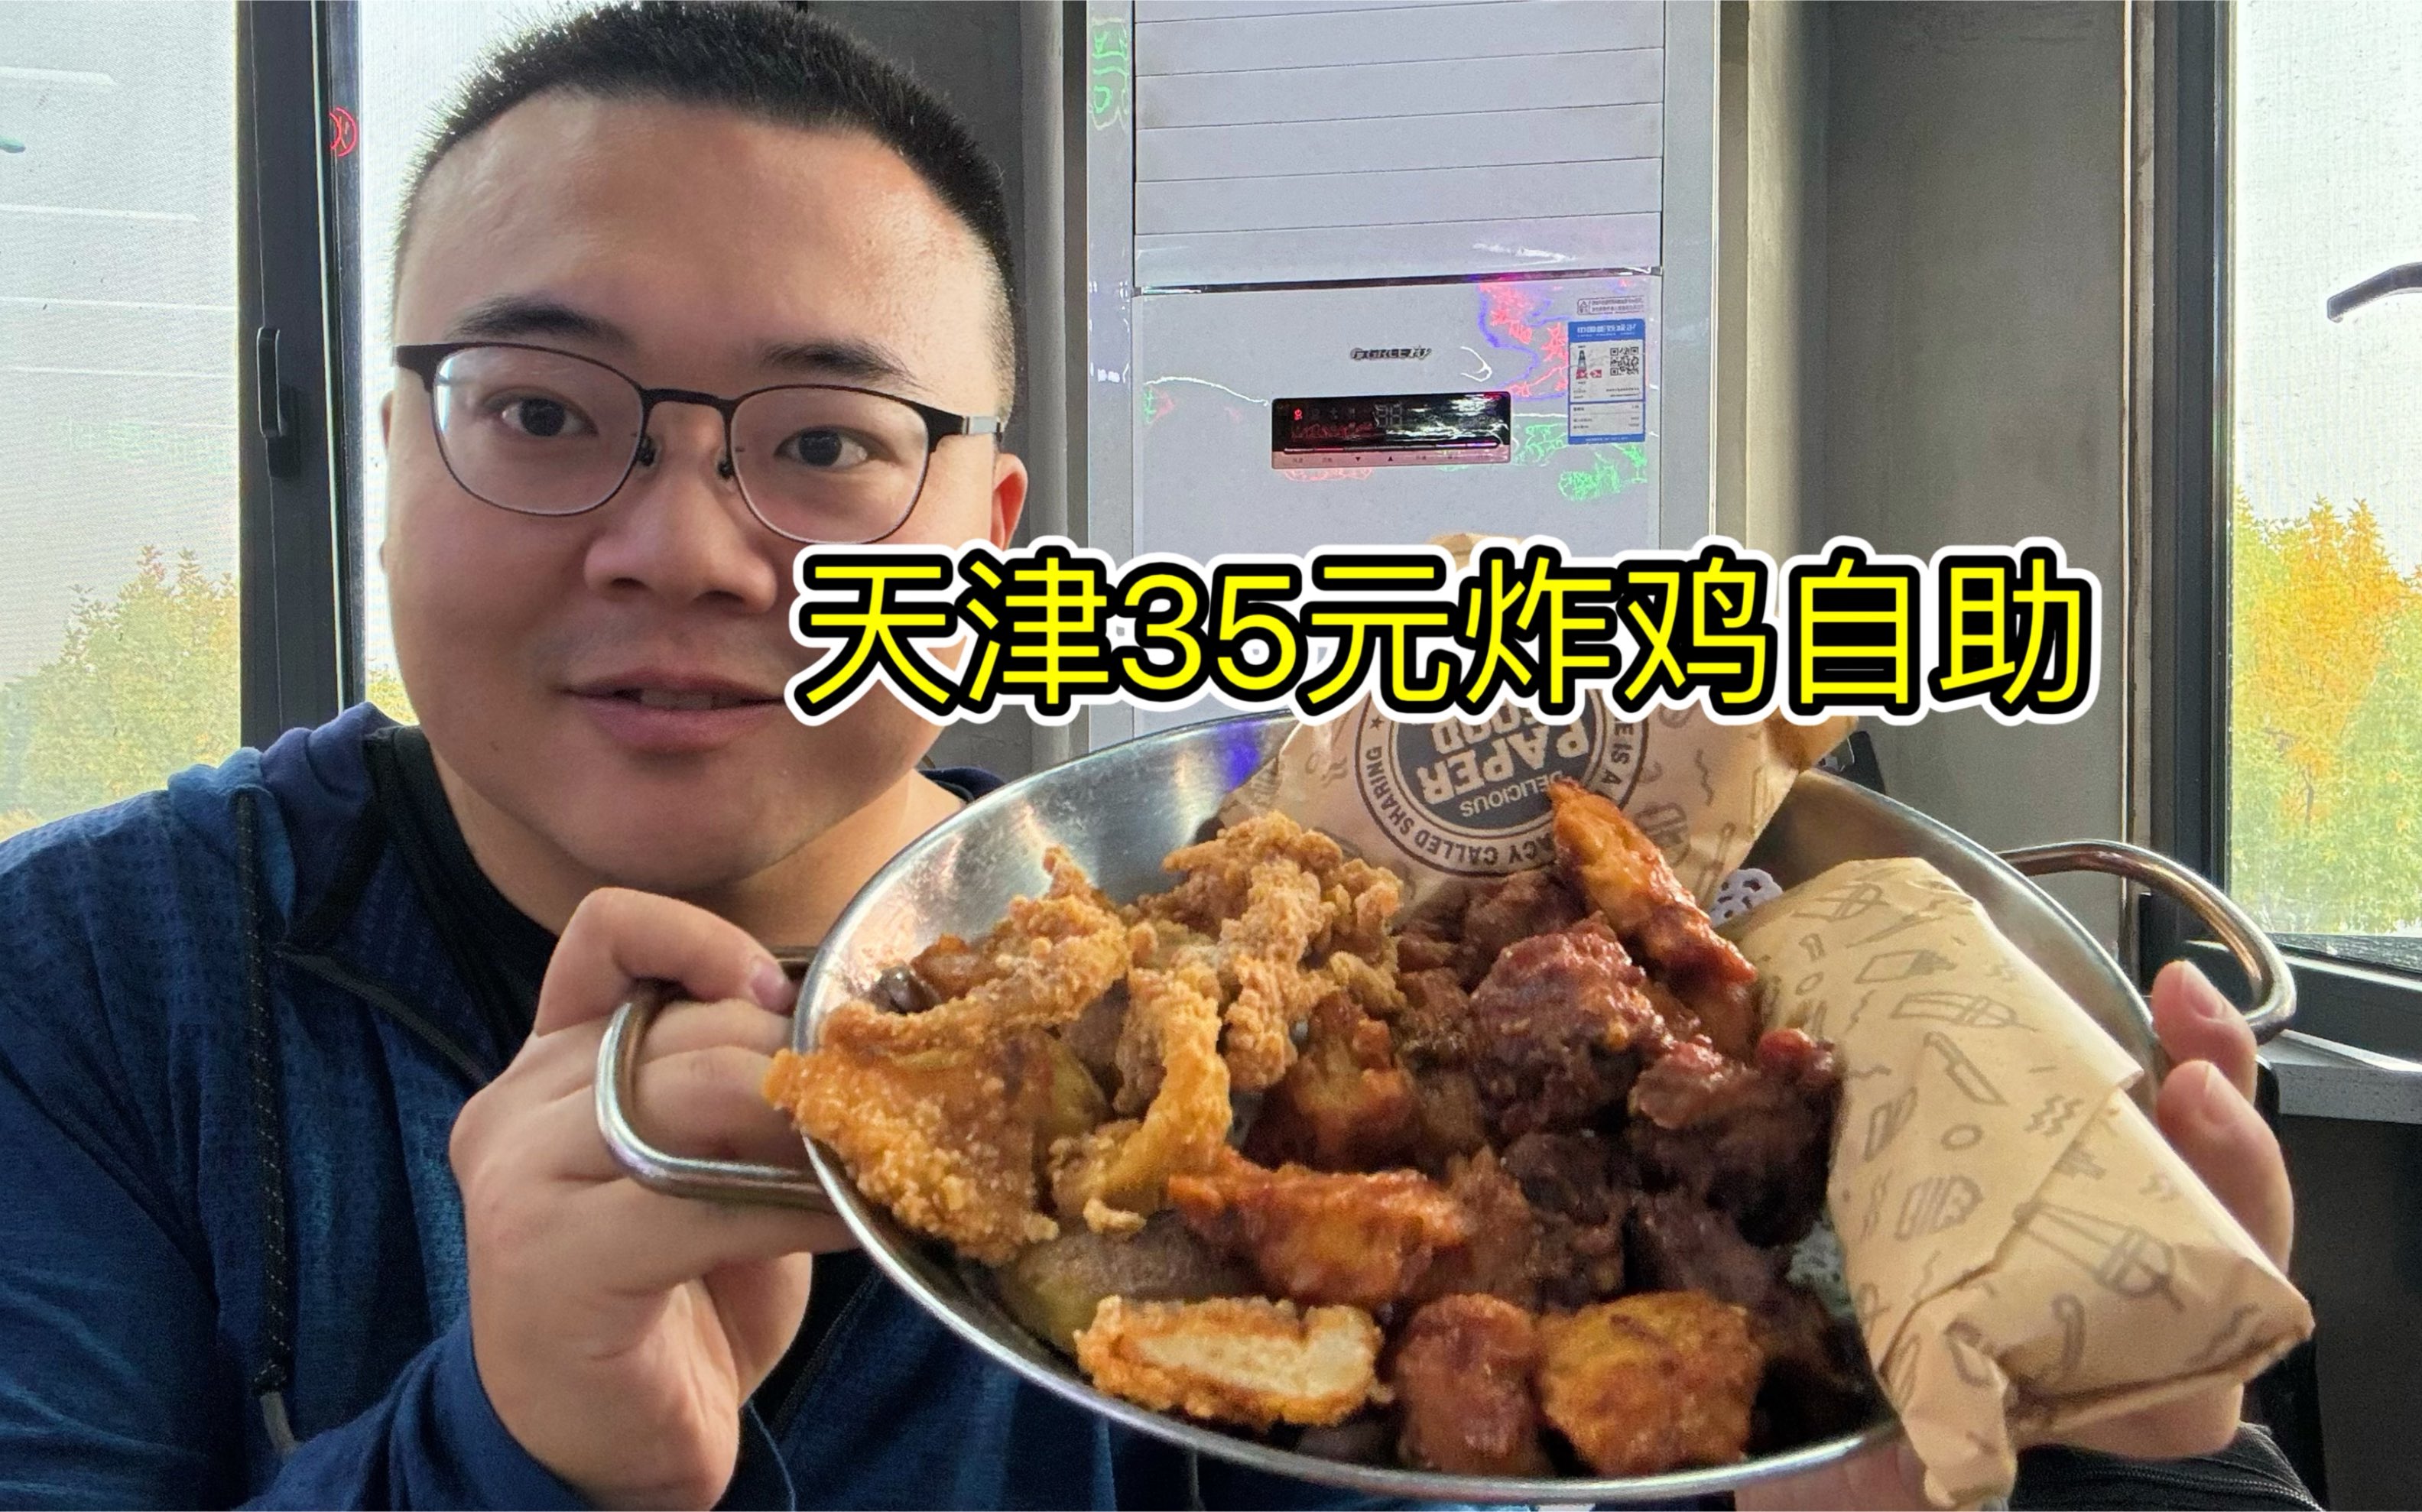 炸鸡自由！天津35元炸鸡自助，20种餐品不限量畅吃！吃着好过瘾！